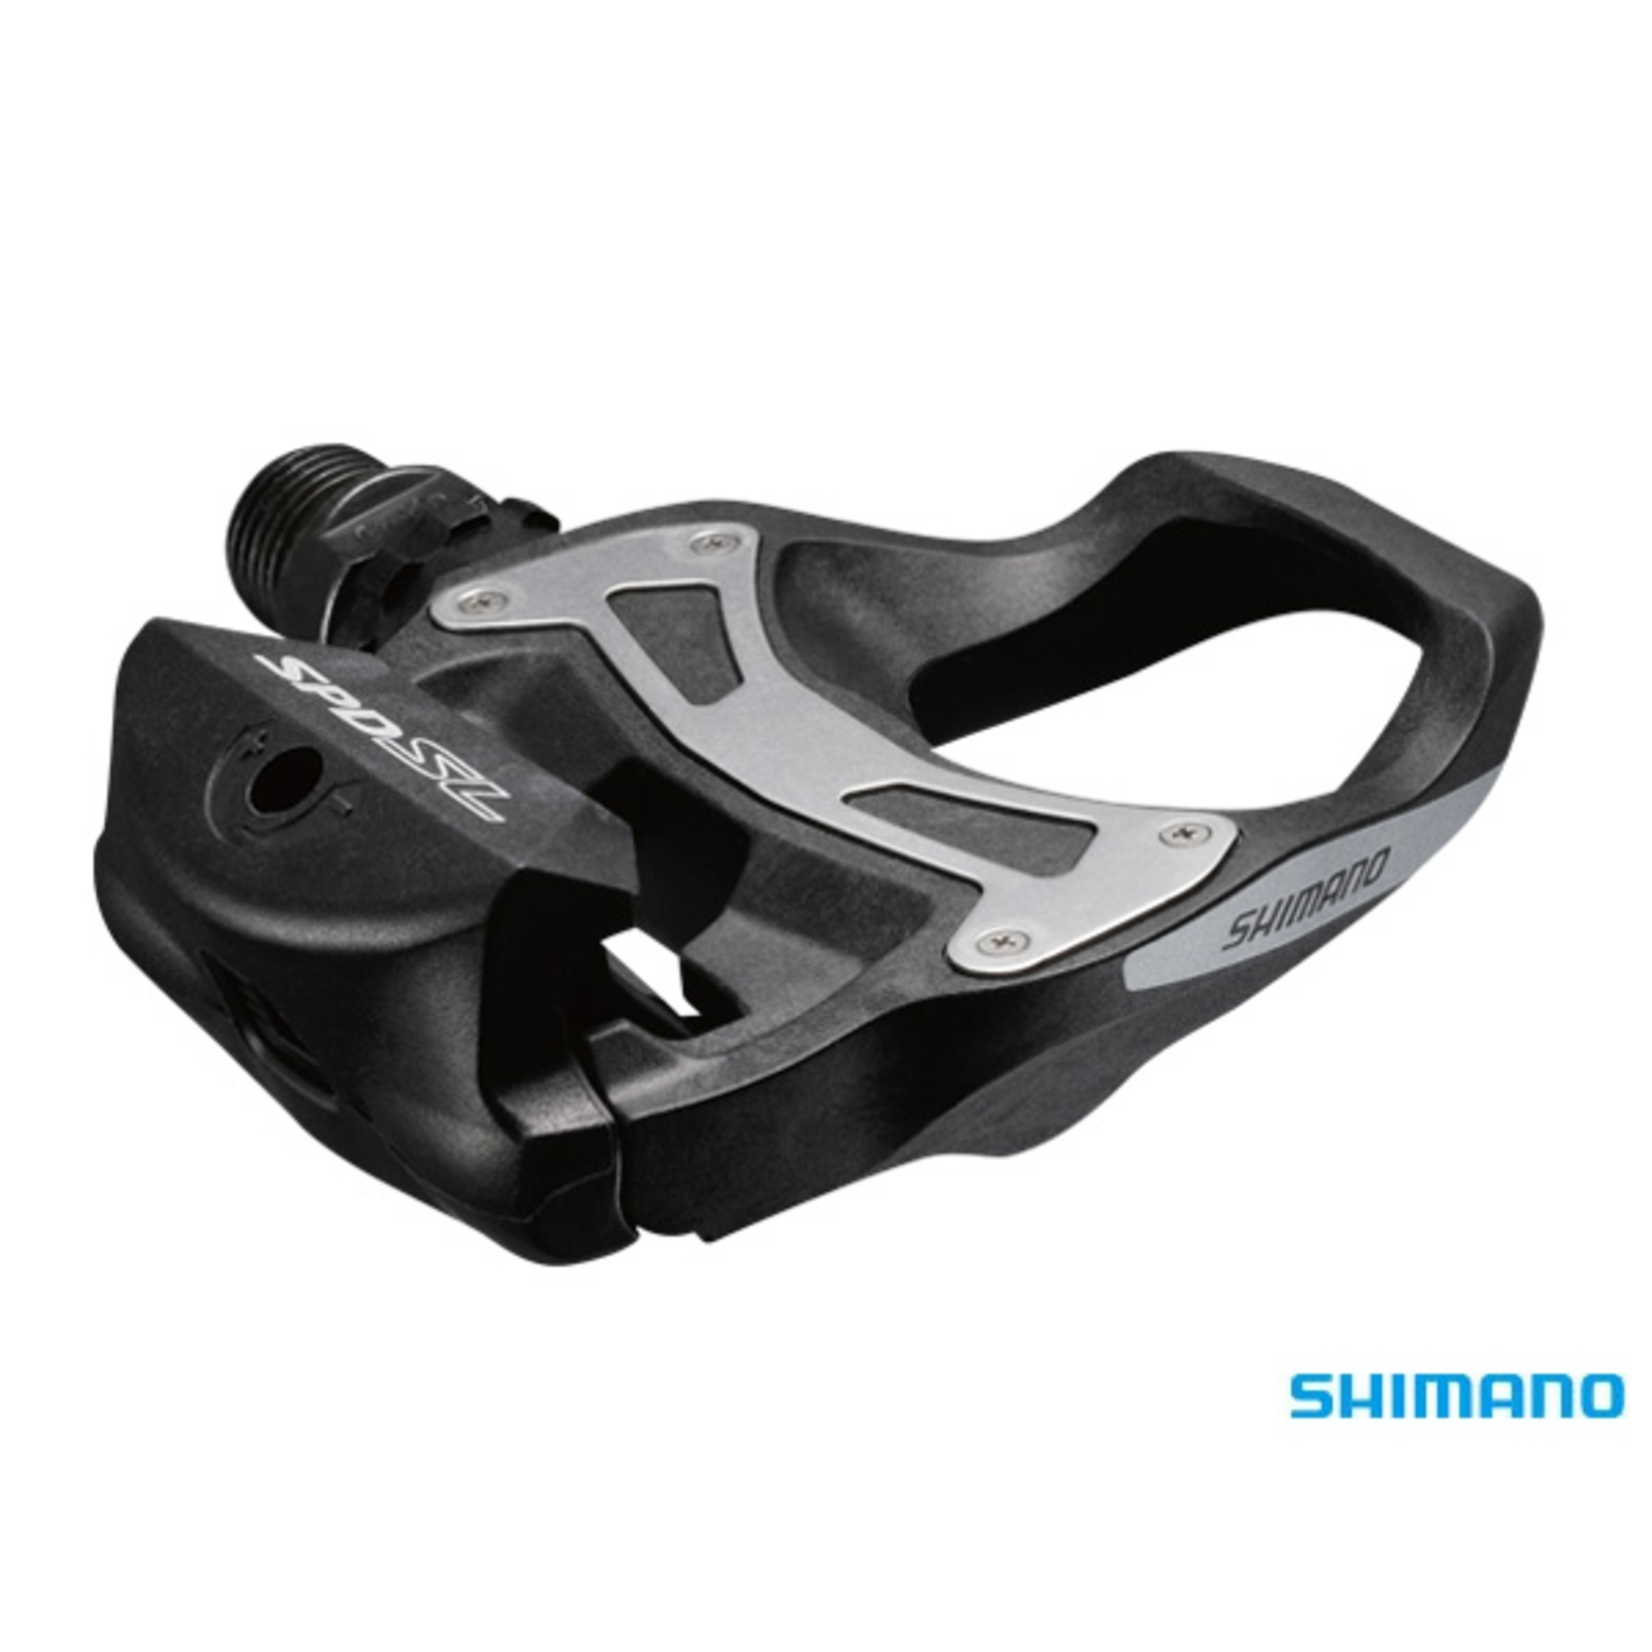 Shimano SHIMANO SPD Clip Pedals